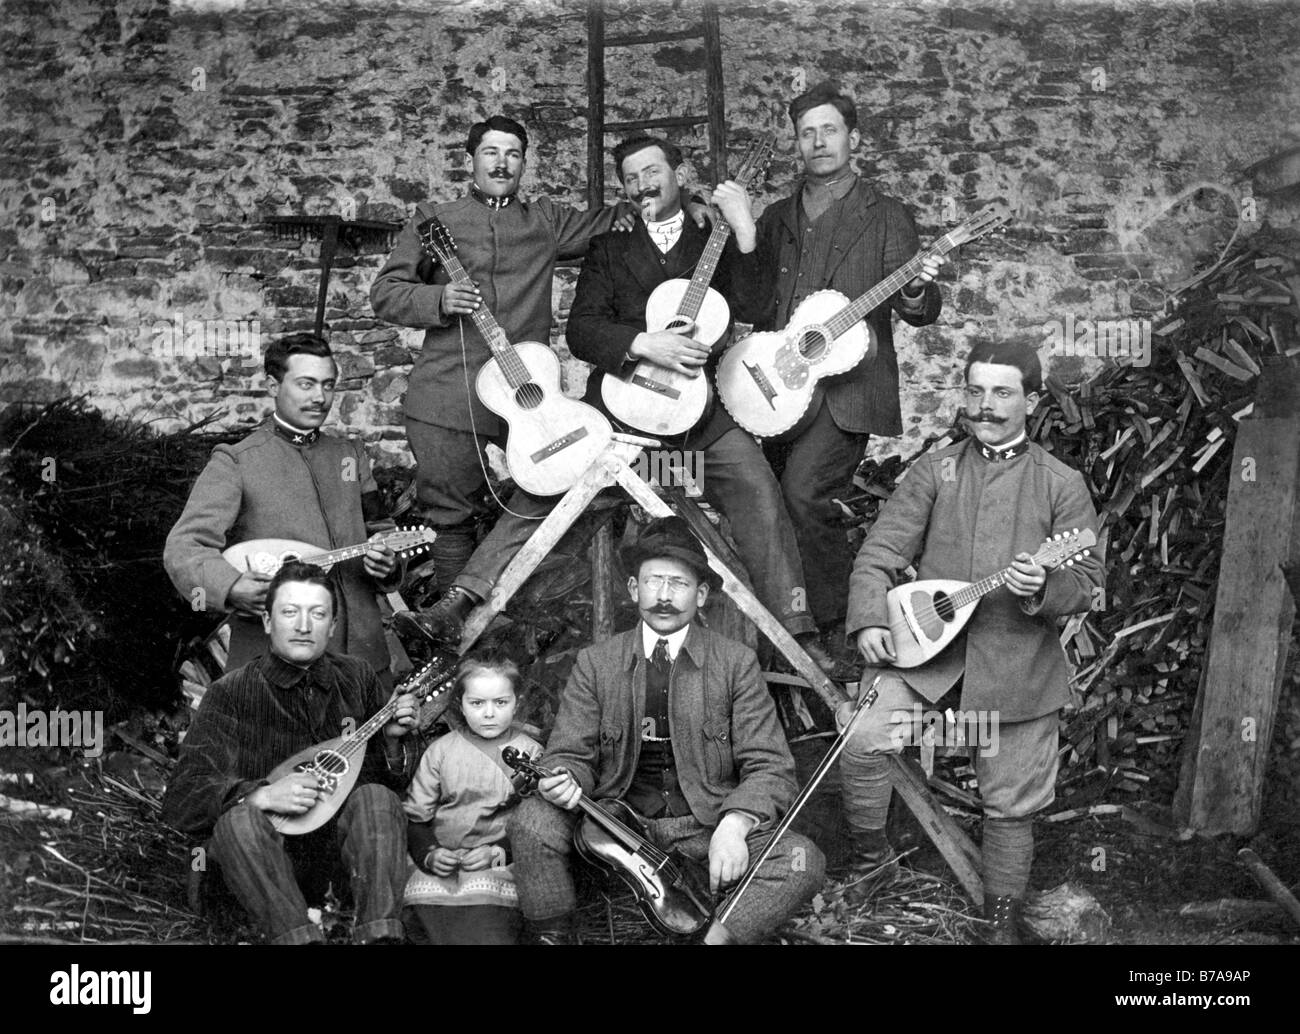 Foto histórica, del grupo de música compuesta exclusivamente de hombres, ca. 1920 Foto de stock